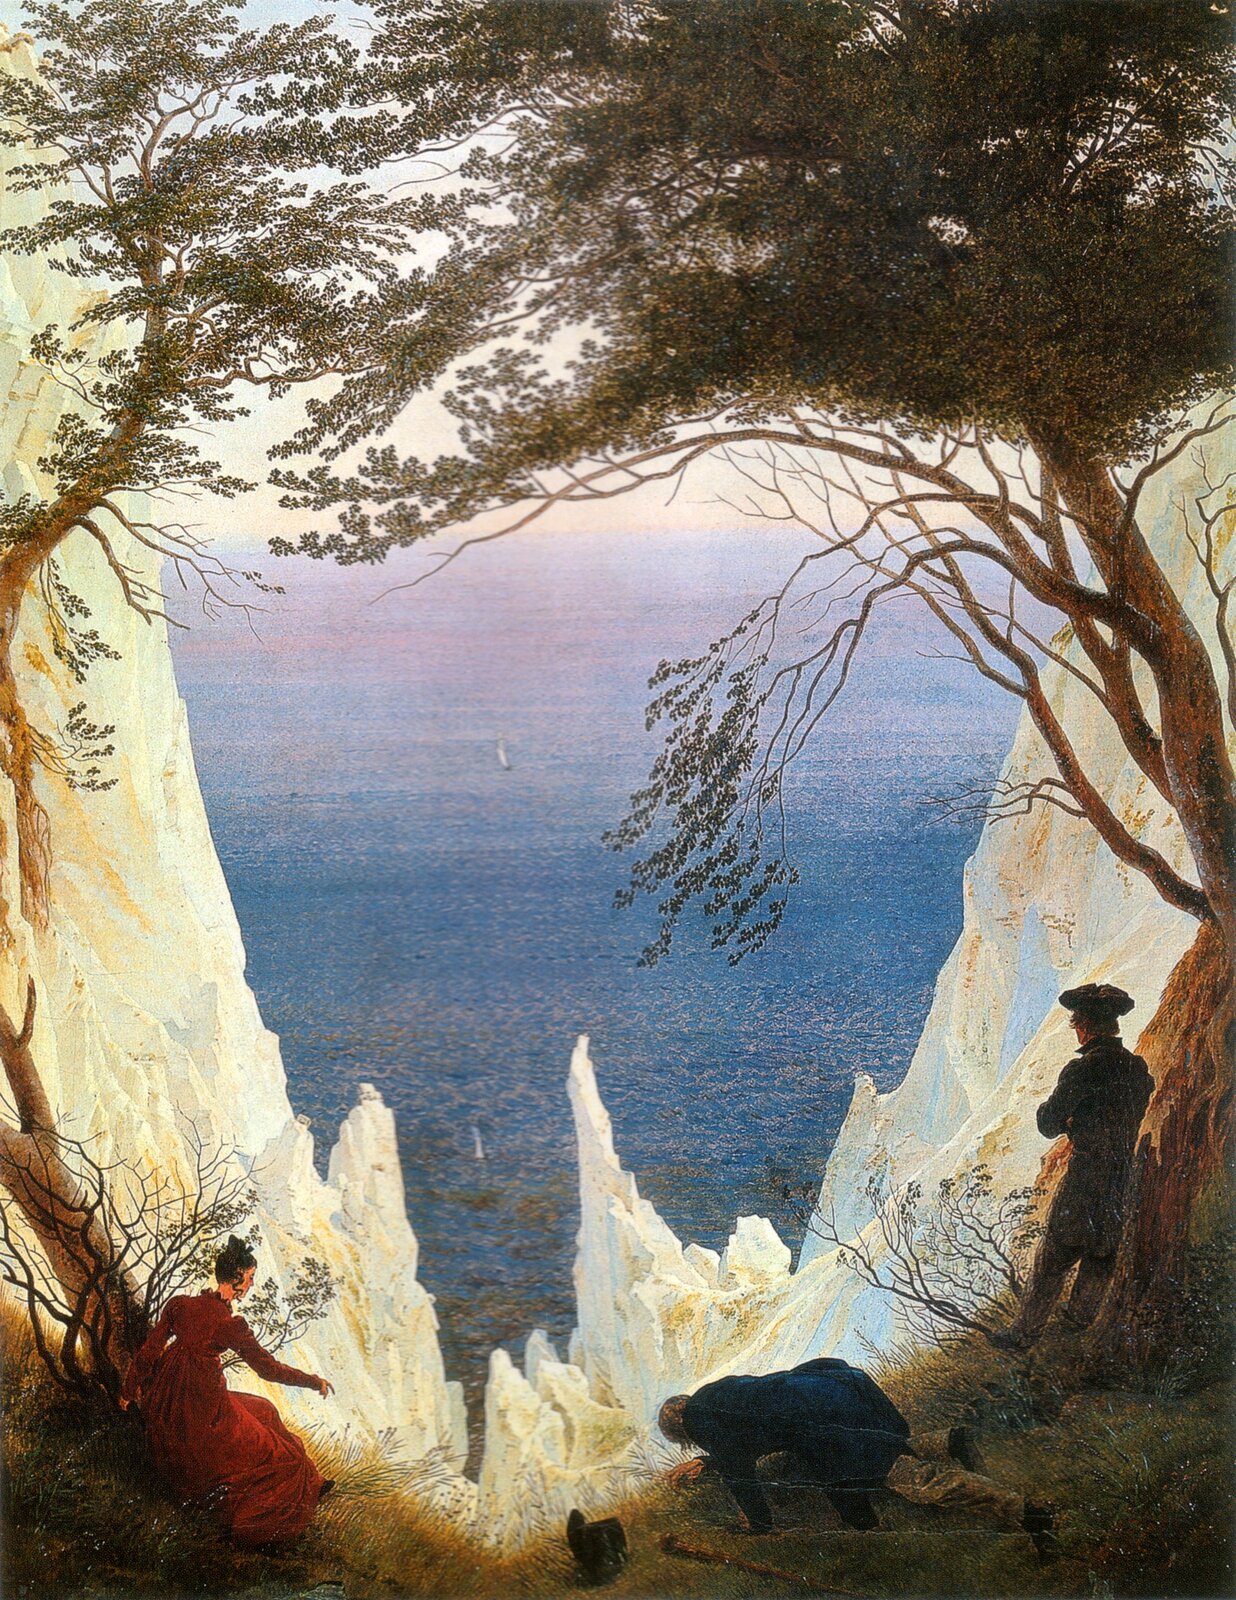 Obraz przedstawia pejzaż górski. Na pierwszym planie znajduje się wąska przestrzeń okolona stromymi skałami. Stromo wznoszące się skały umożliwiają spojrzenie w głęboki jar i morską dal. Po lewej stronie obrazu znajduje się kobieta w długiej, czerwonej sukni chwytająca gałęzie krzewu, aby uchronić się przed upadkiem w przepaść. Klęczący pośrodku stary mężczyzna spogląda ze skraju urwiska w przepaść. Po prawej stronie stoi młody mężczyzna w kapeluszu rozmyśla i patrzy w przestrzeń.